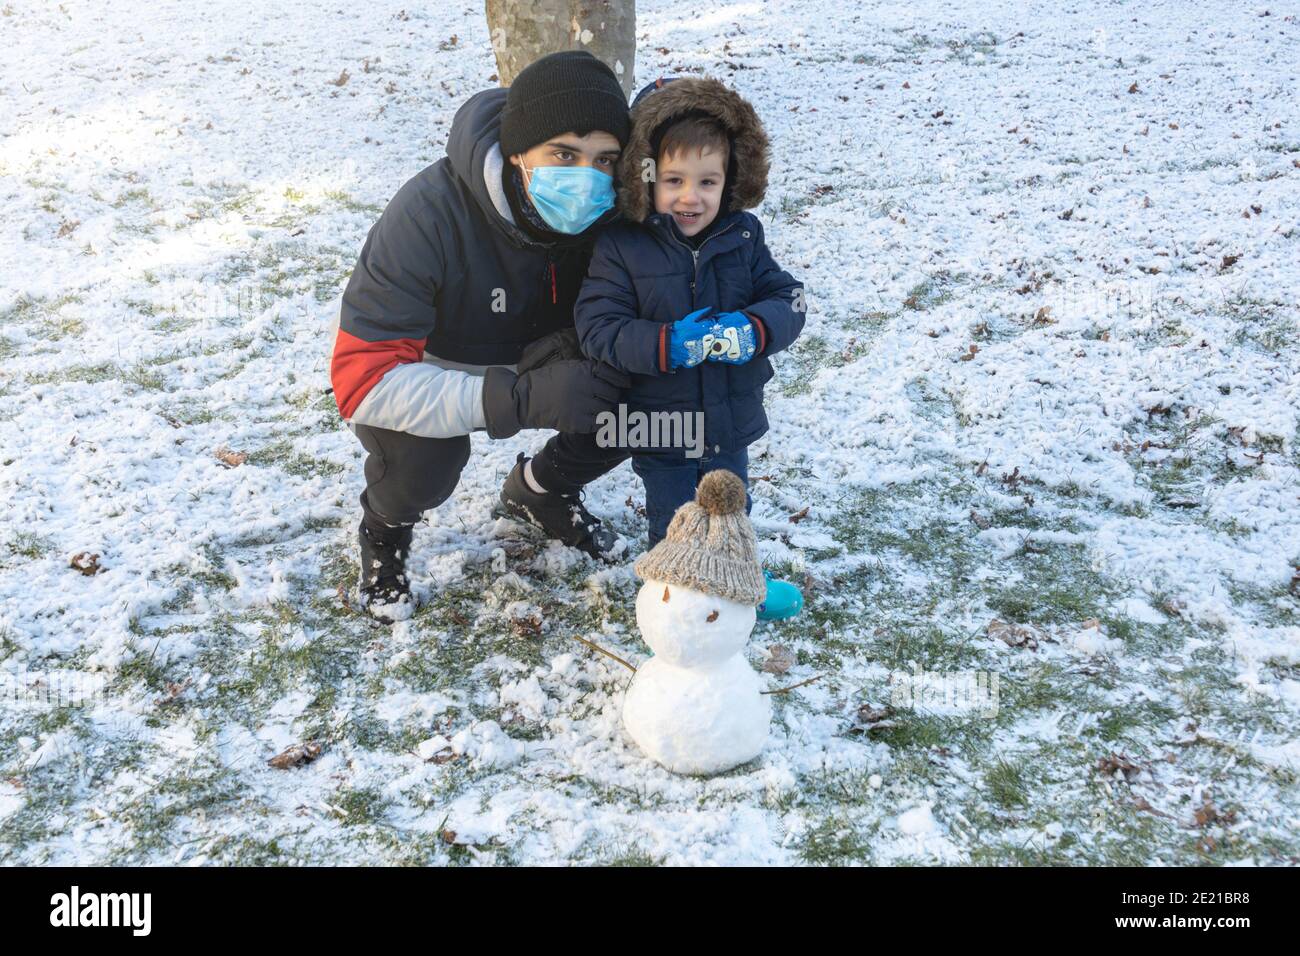 Teenager und Kleinkind in Schneemänteln, Handschuhen und Stiefeln mit ihrem Schneemann an einem kalten Wintertag Stockfoto